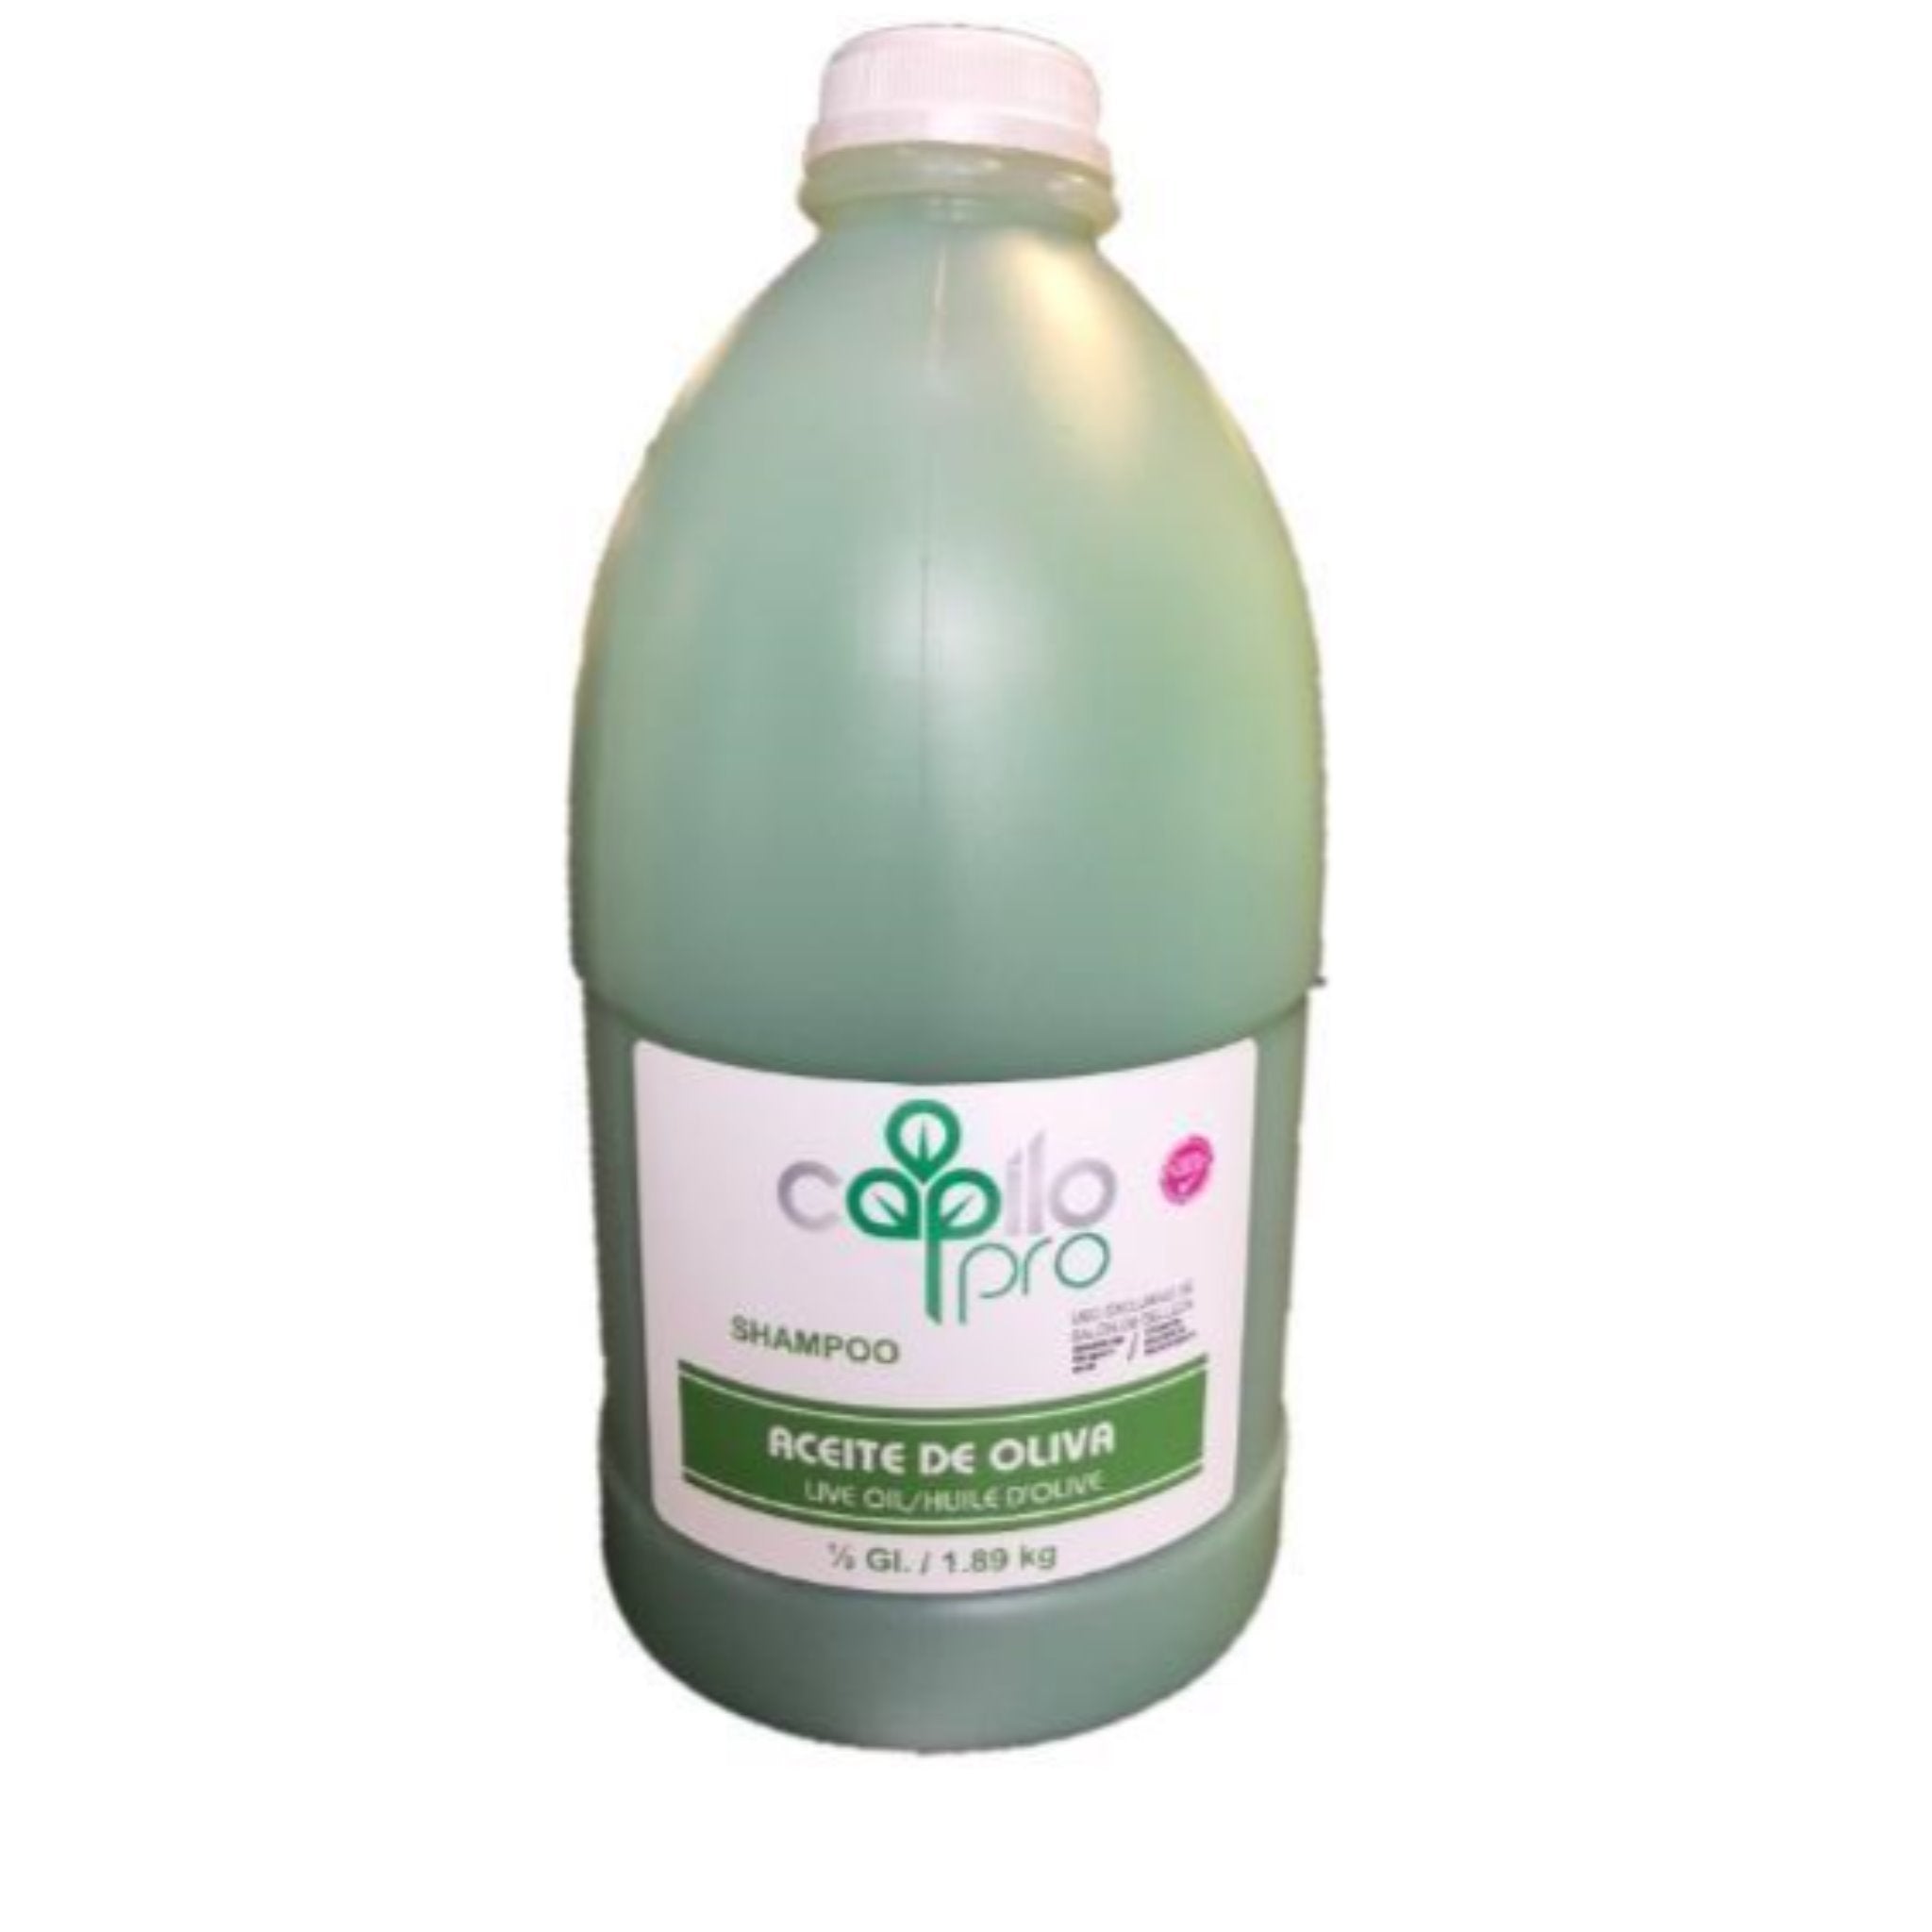 Capilo Olive Shampoo 1/2 Gl